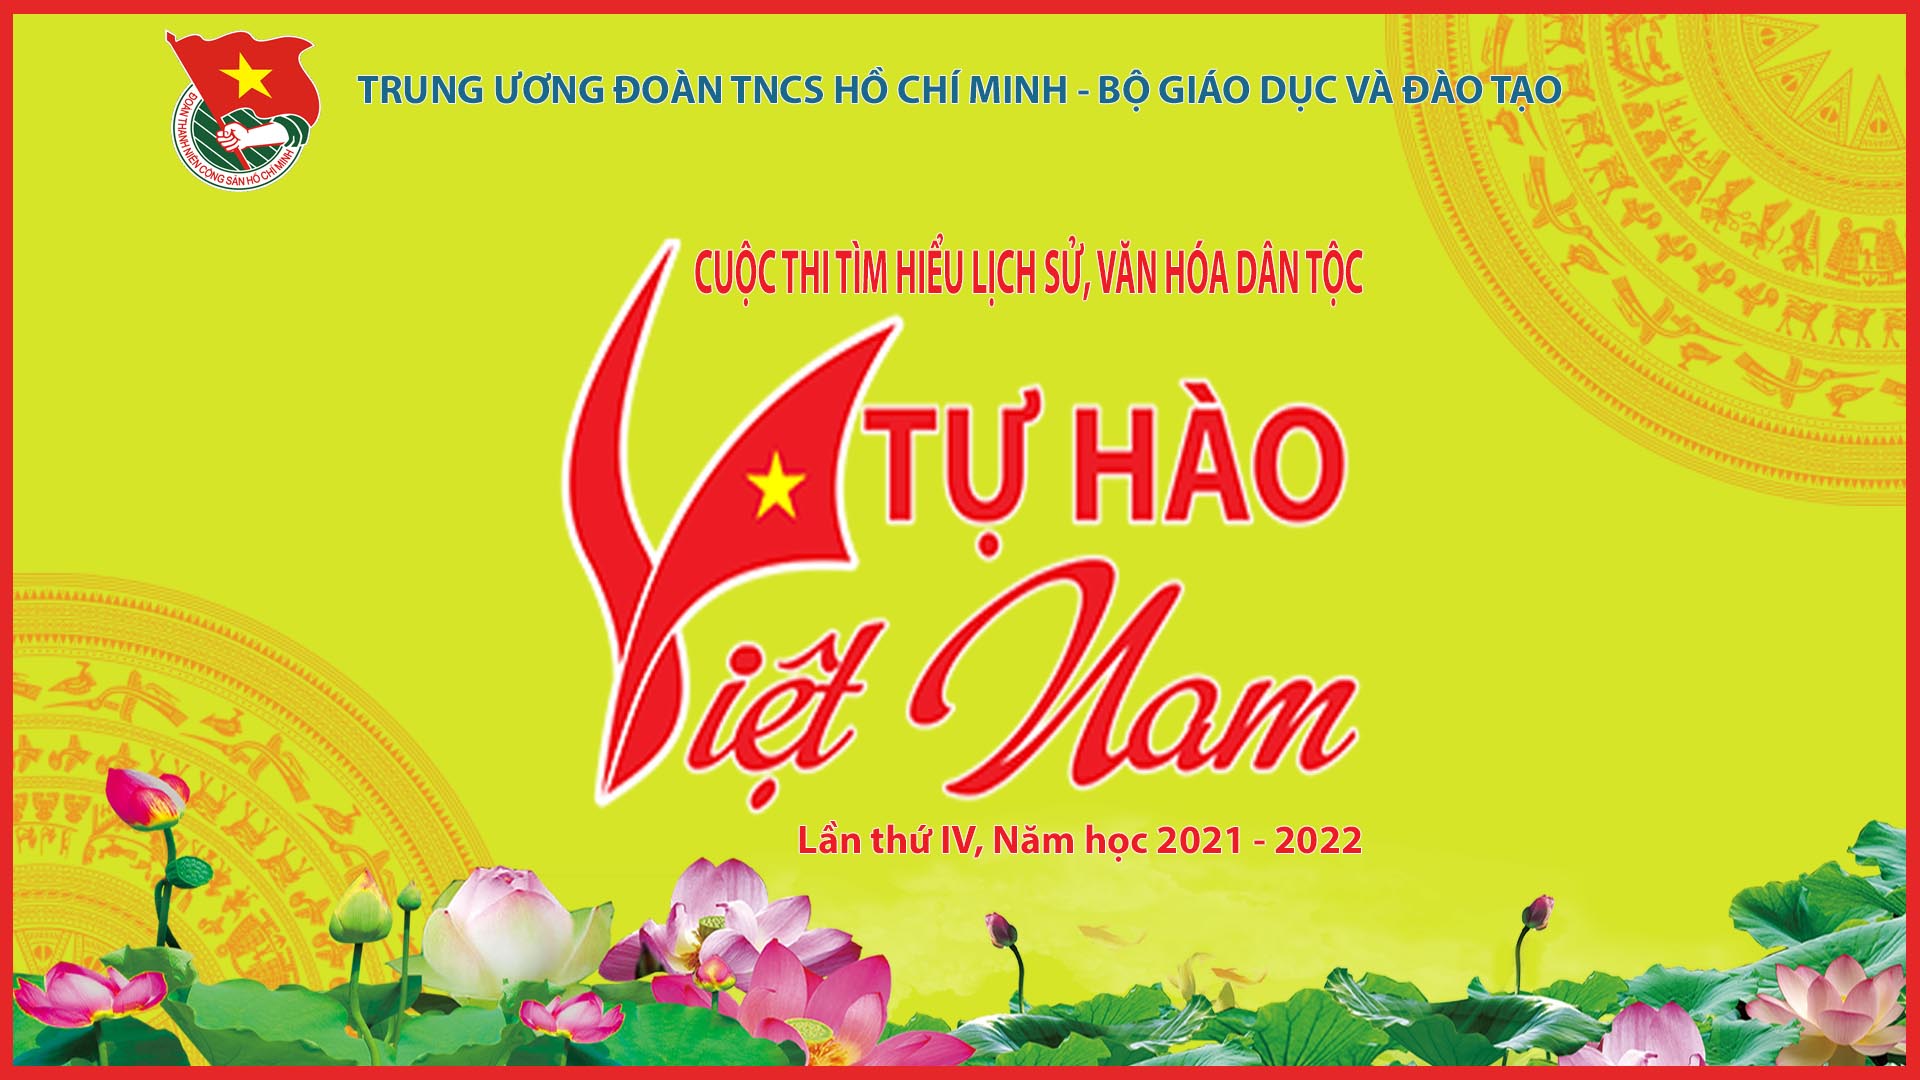 Đẩy mạnh tham gia cuộc thi “Tự hào Việt Nam” do Trung ương Đoàn TNCS Hồ Chí Minh và Bộ Giáo dục và Đào tạo phối hợp tổ chức.